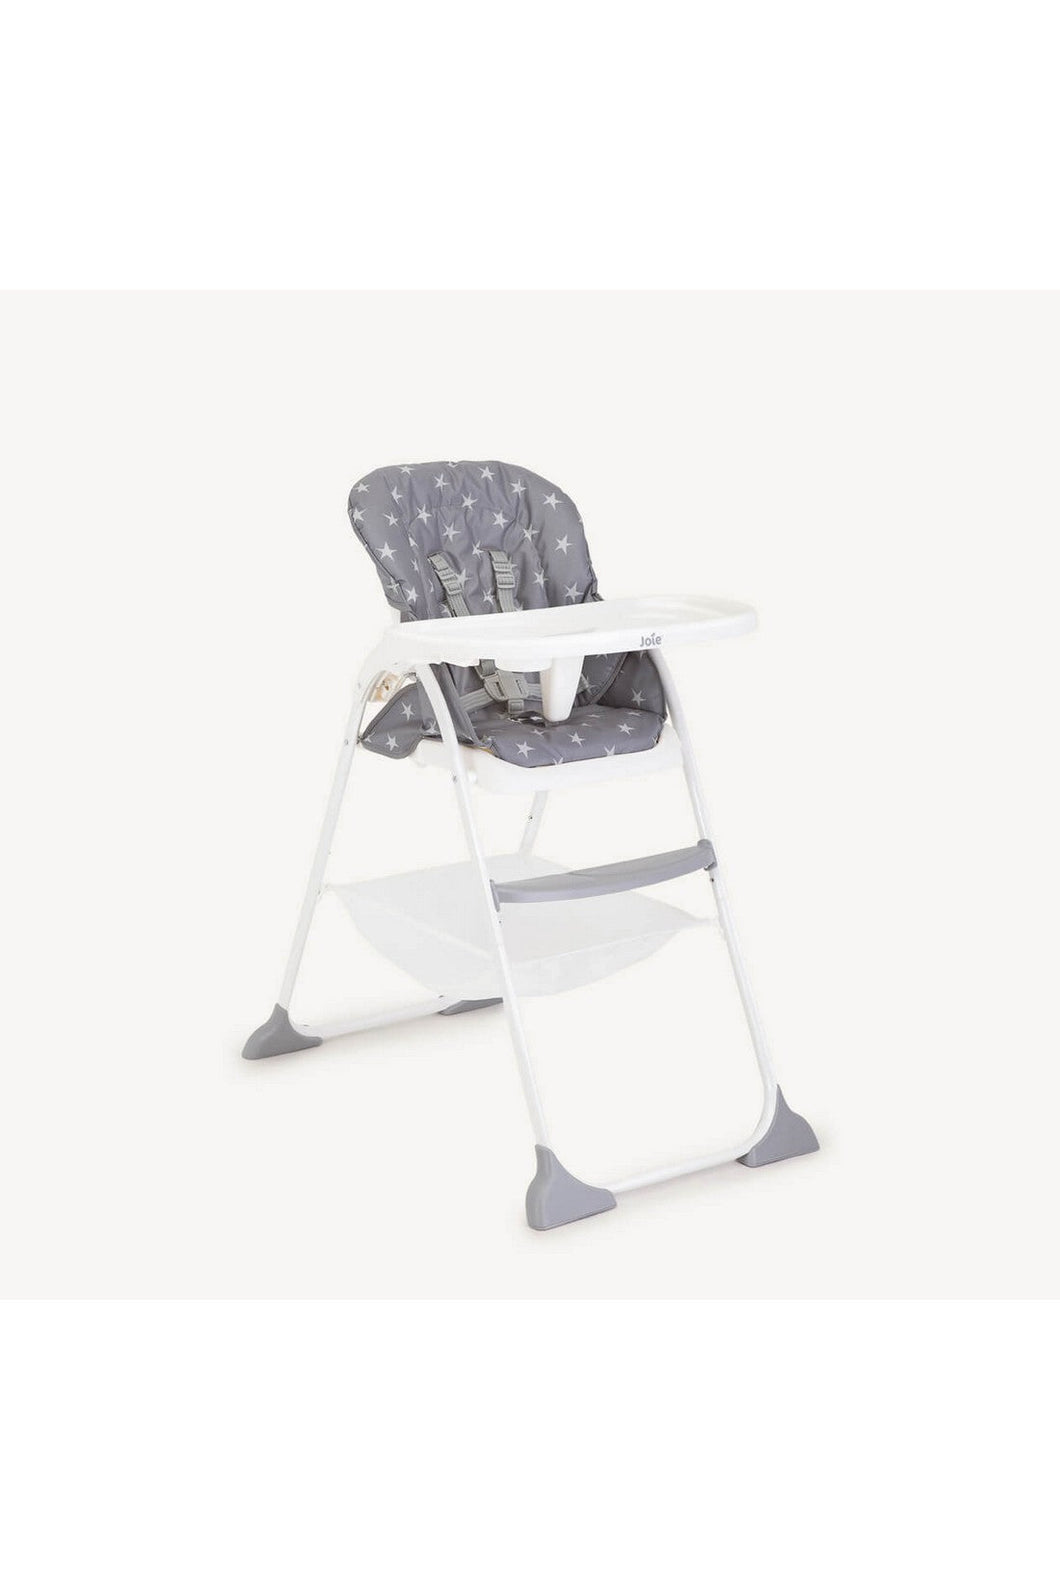 Joie Mimzy™ Snacker Fast Folding Highchair [bundle item]